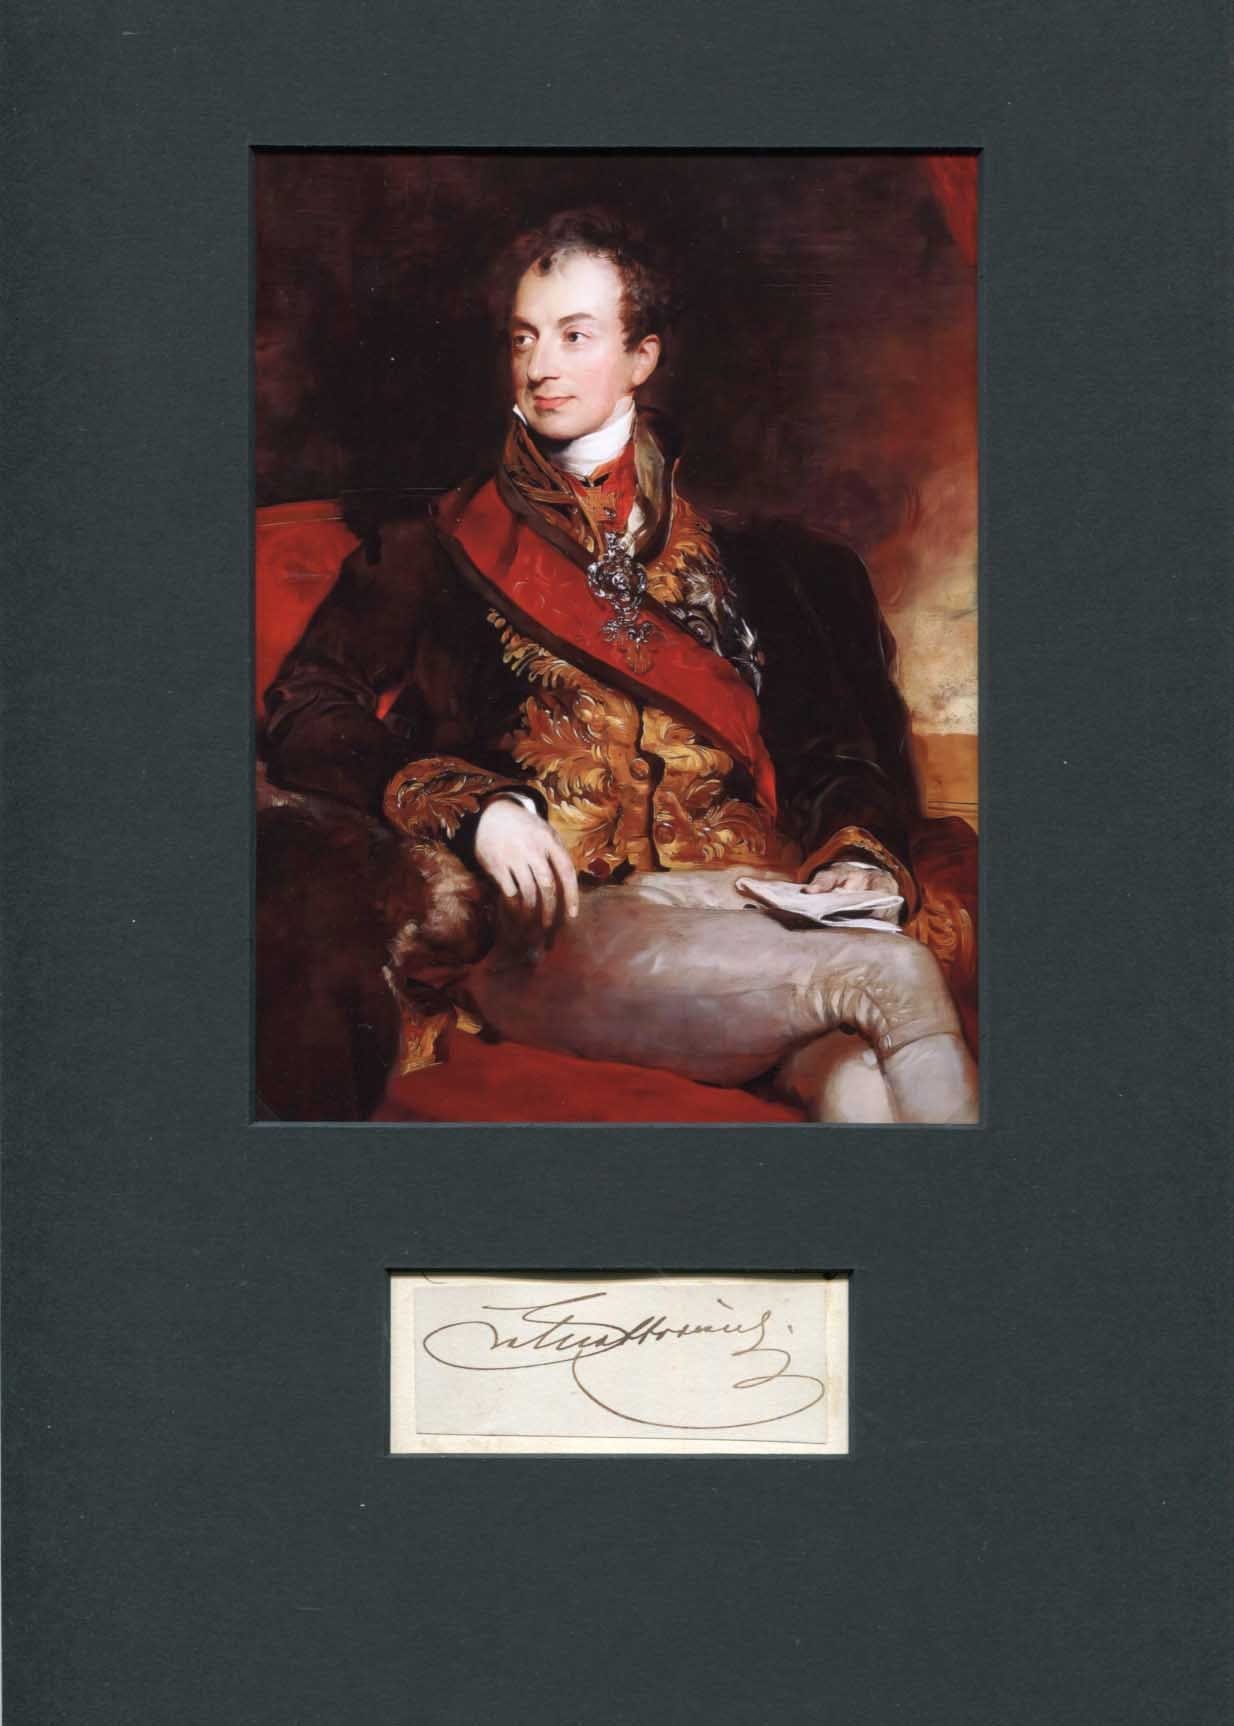 Klemens von Metternich Autograph Autogramm | ID 7836363554965